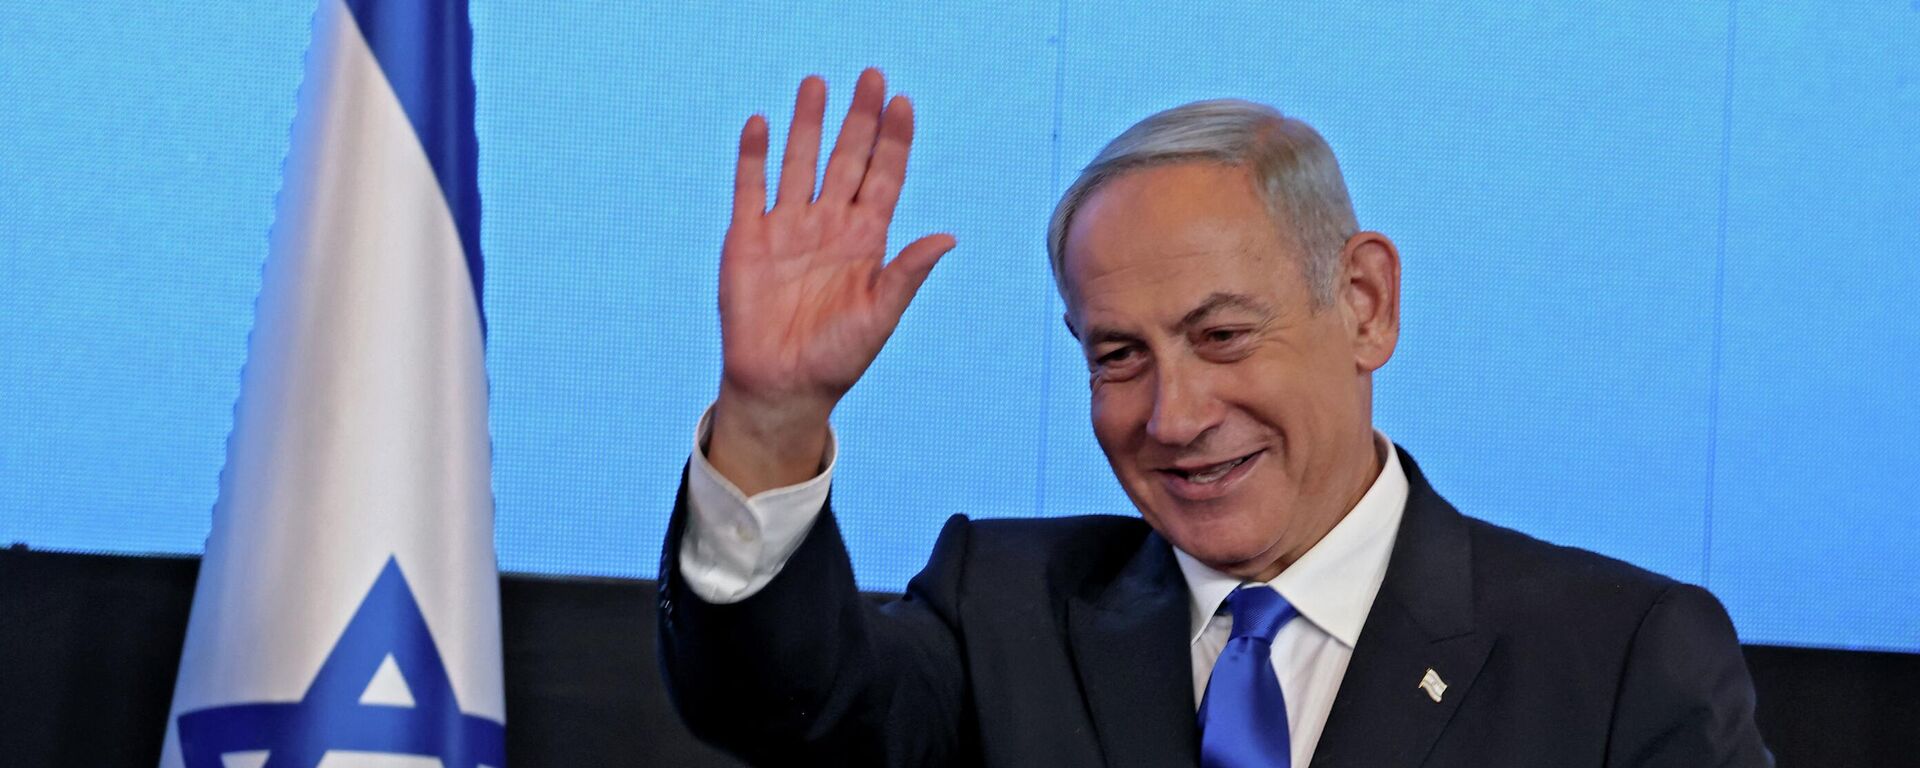 زعيم المعارضة الإسرائيلية بنيامين نتنياهو بعد فوزه في الانتخابات العامة في إسرائيل، نوفمبر/ تشرين الثاني 2022. - سبوتنيك عربي, 1920, 25.03.2023